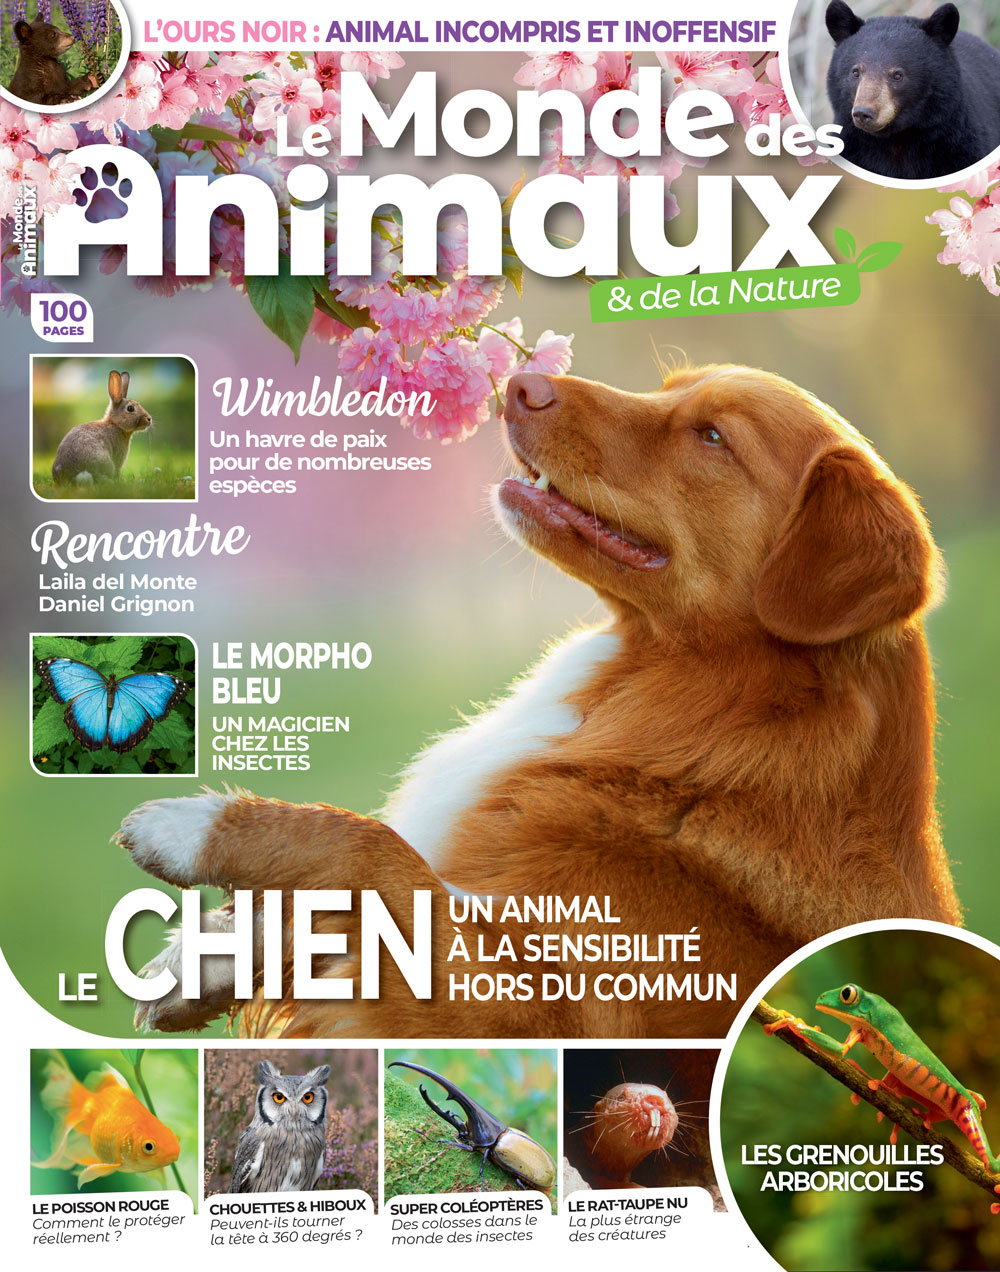 Le Monde des Animaux magazine